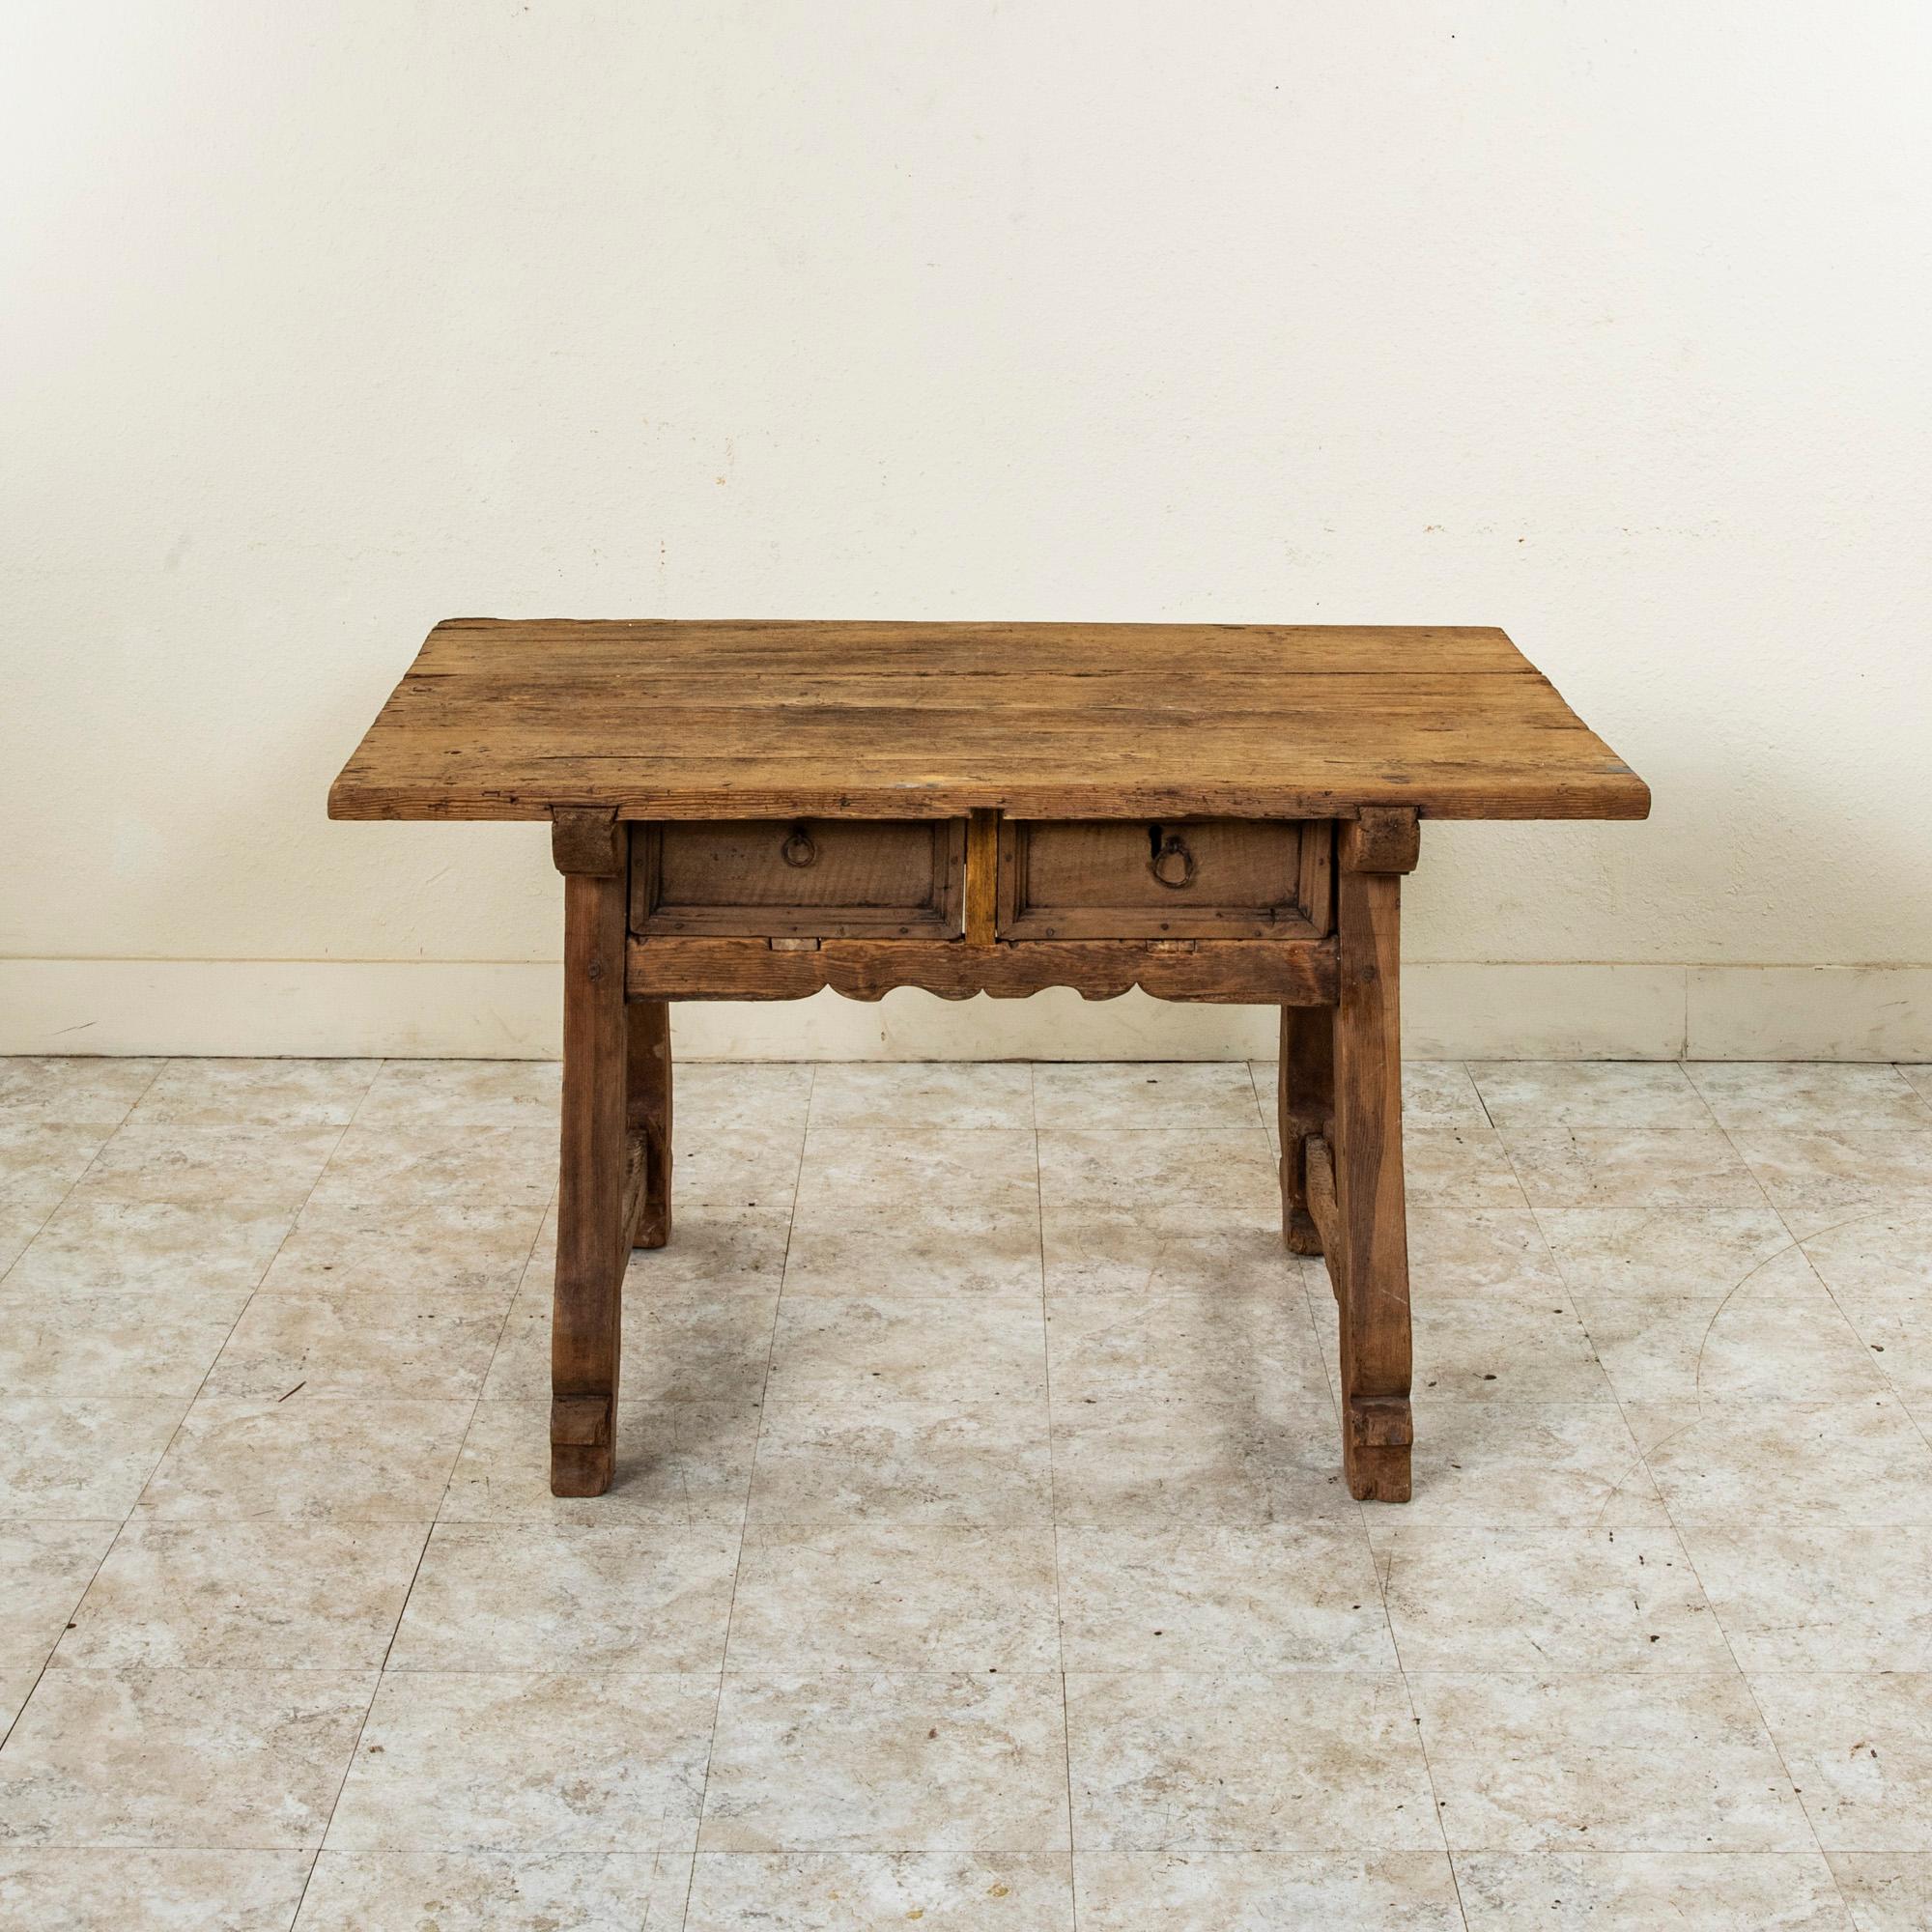 Cette table à écrire rustique en pin, fabriquée artisanalement, provient de l'Auvergne, une région montagneuse du centre de la France. Créée par un éleveur de chèvres au XVIIe siècle alors qu'il gardait ses moutons, cette table est fabriquée à